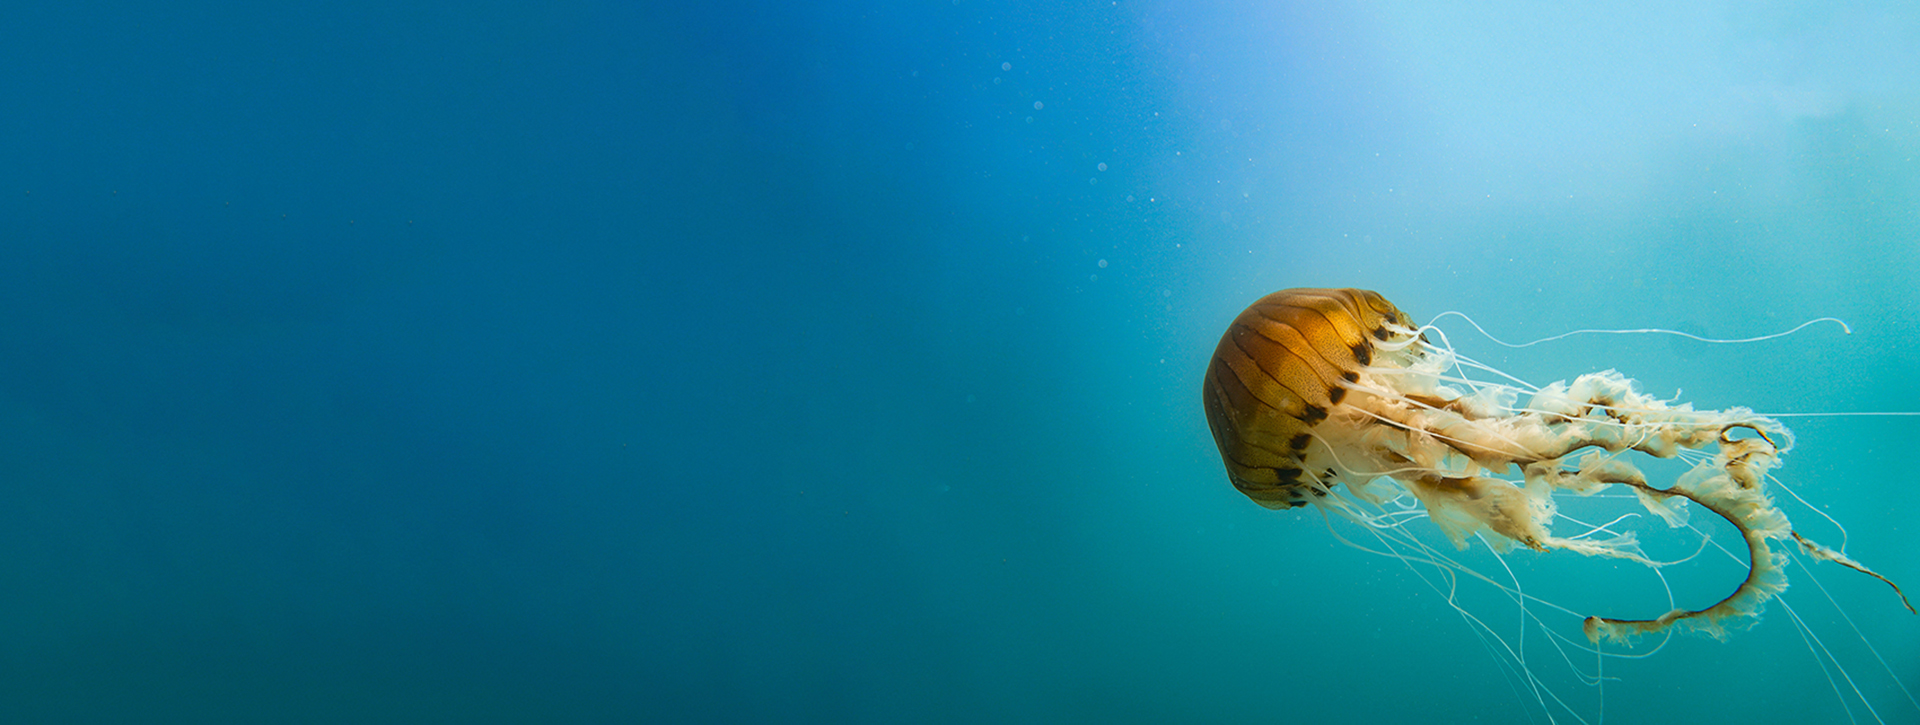 jellyfish underwater in blue sea